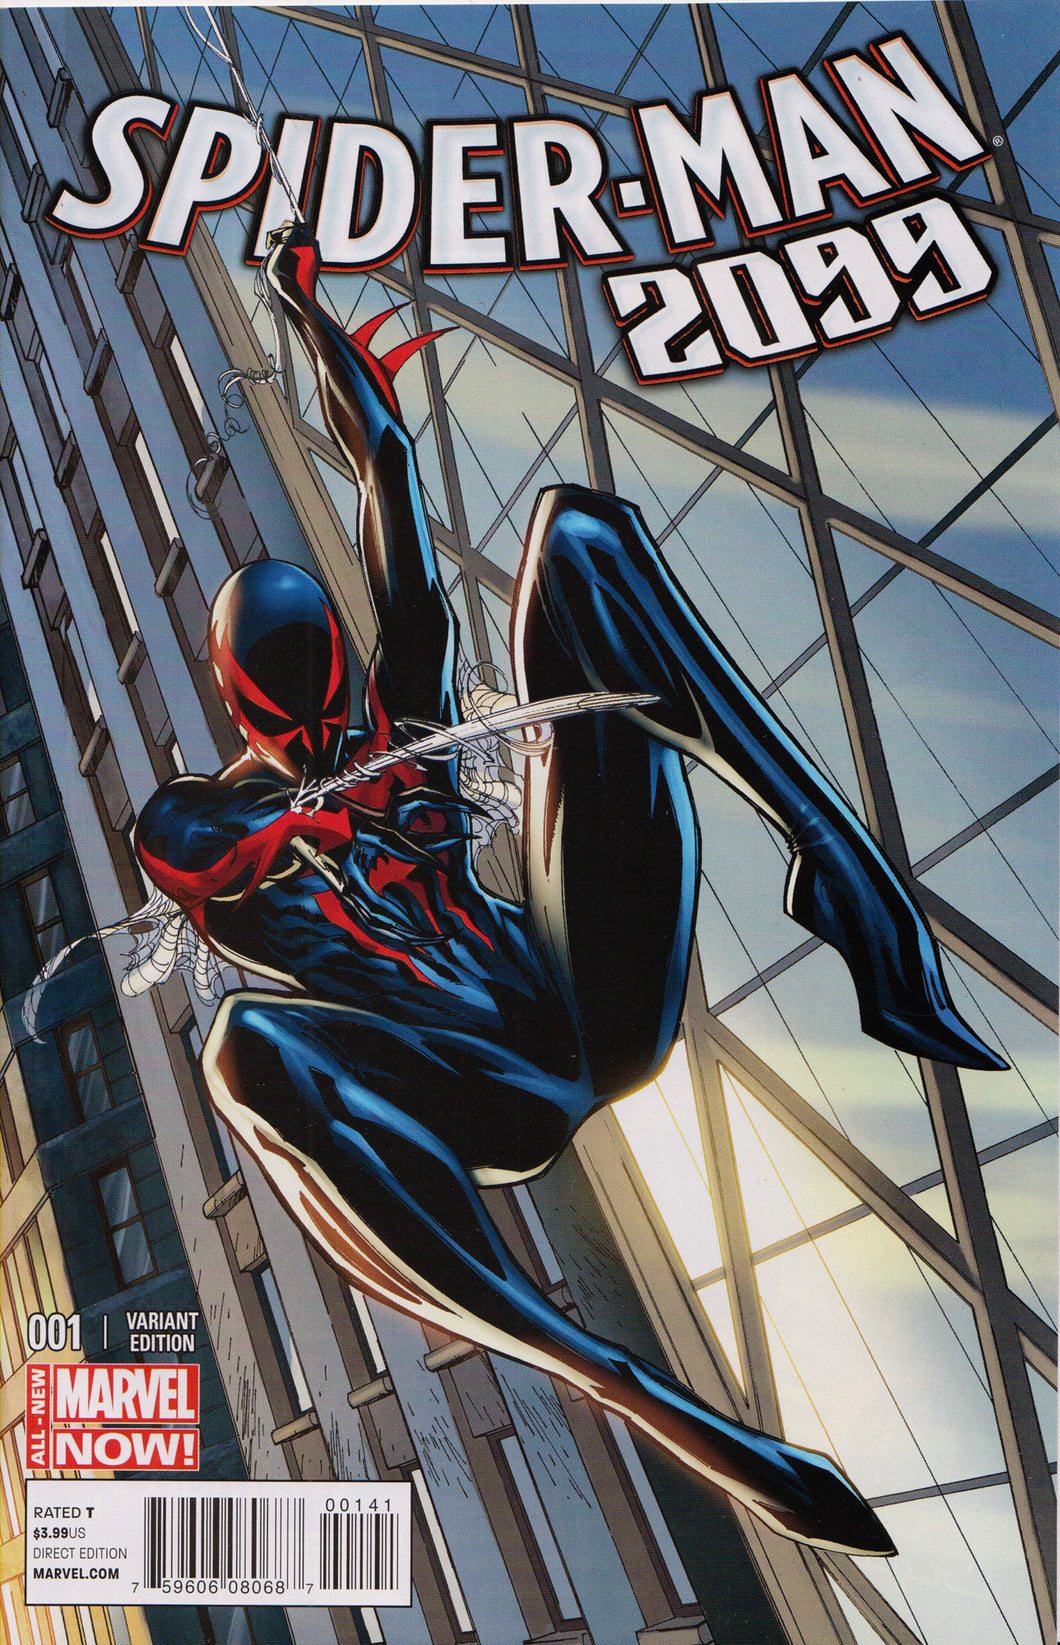 SPIDER-MAN 2099 #1 (J. SCOTT CAMPBELL VARIANT) COMIC BOOK ~ Marvel Comics